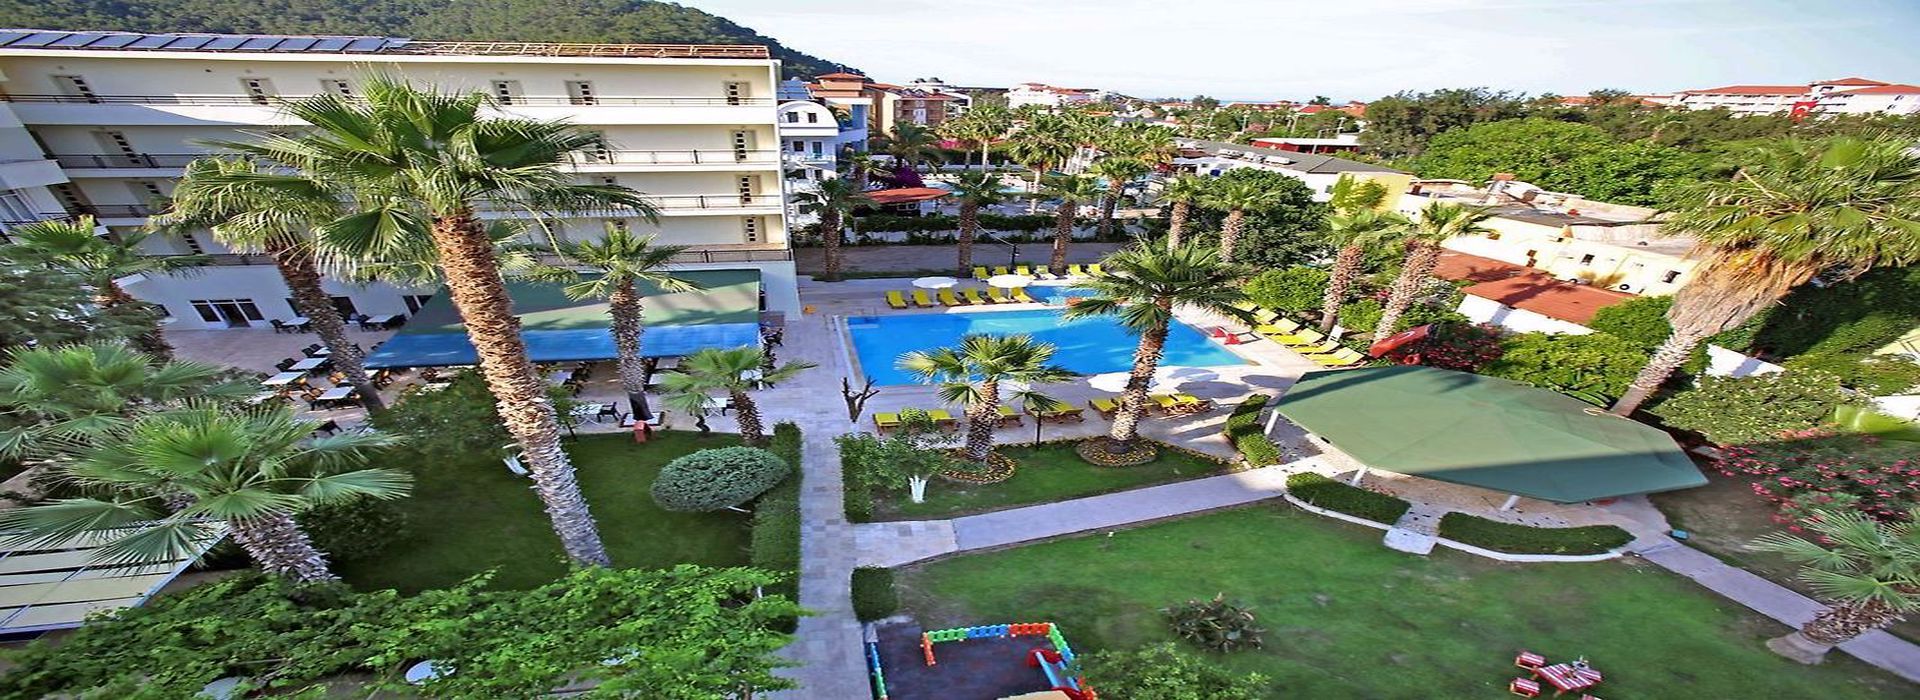 Malibu Resort Hotel Antalya 1